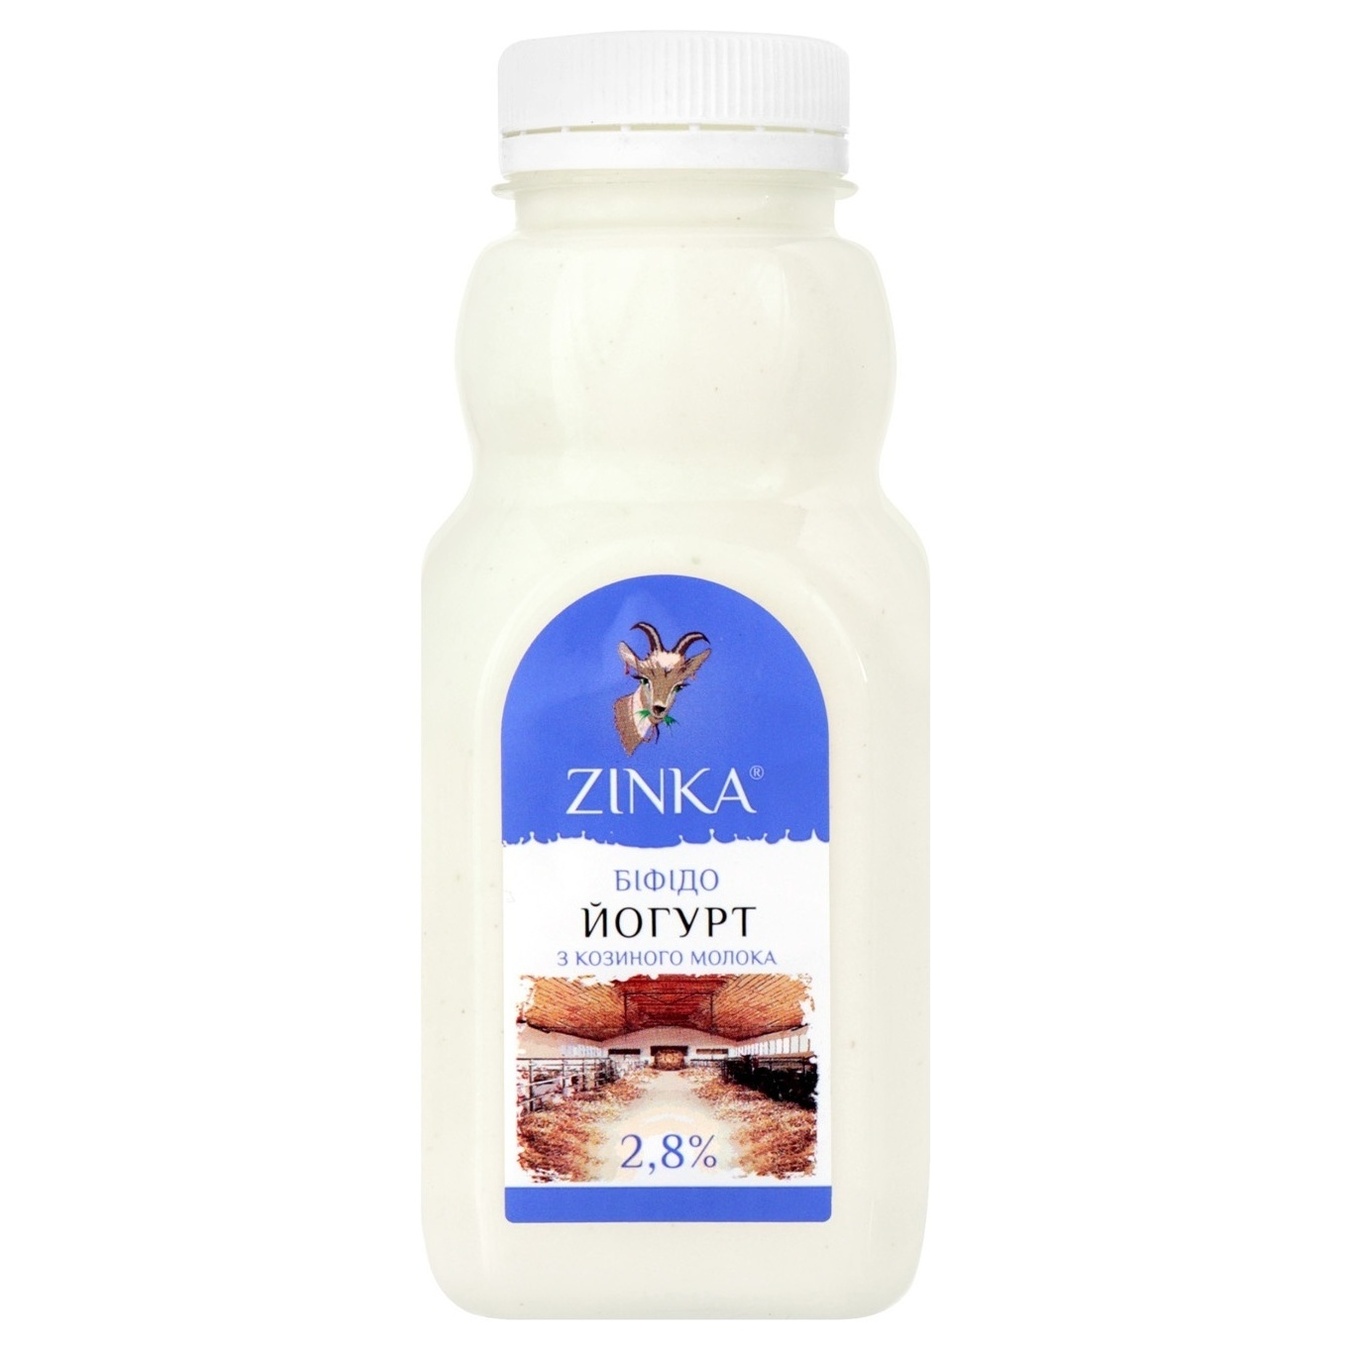 Біфідойогурт Zinka з козиного молока без наповнювача 2,8% 300г